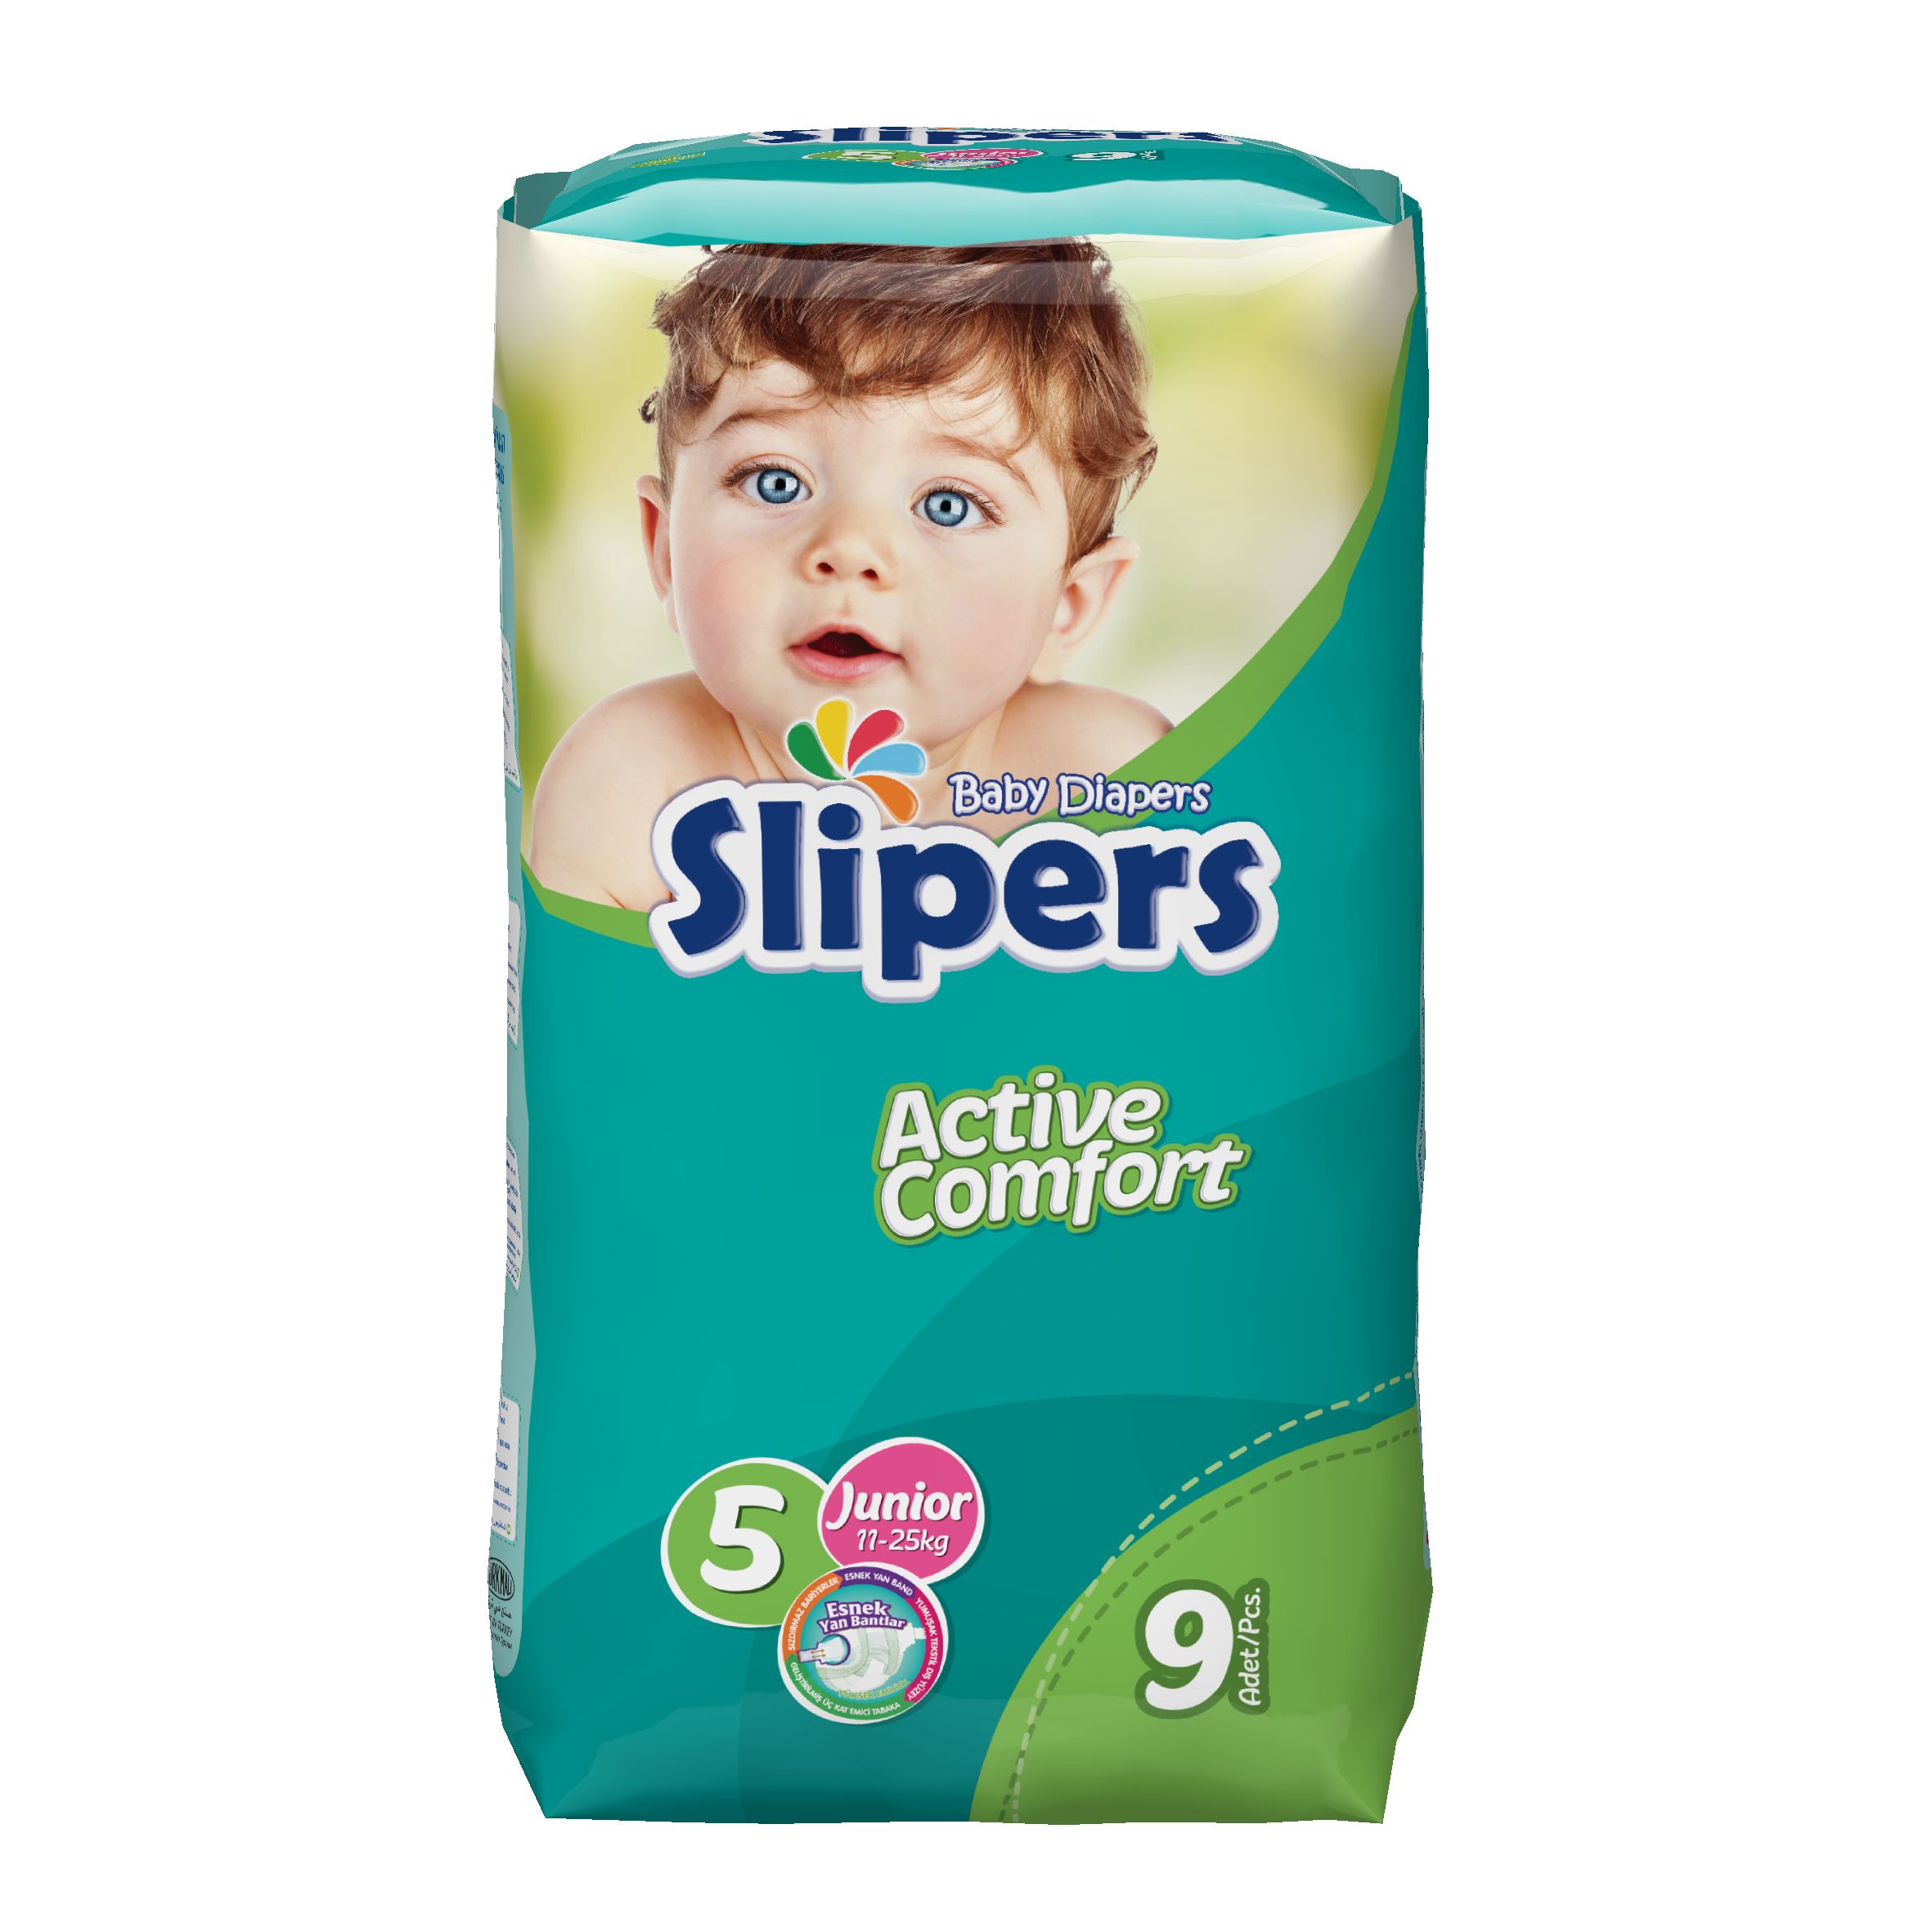 Подгузники 11 25 кг. Comfort Baby подгузники. Юниор Беби. PDV Baby diaper Behance. Подгузники Slipers отзывы.